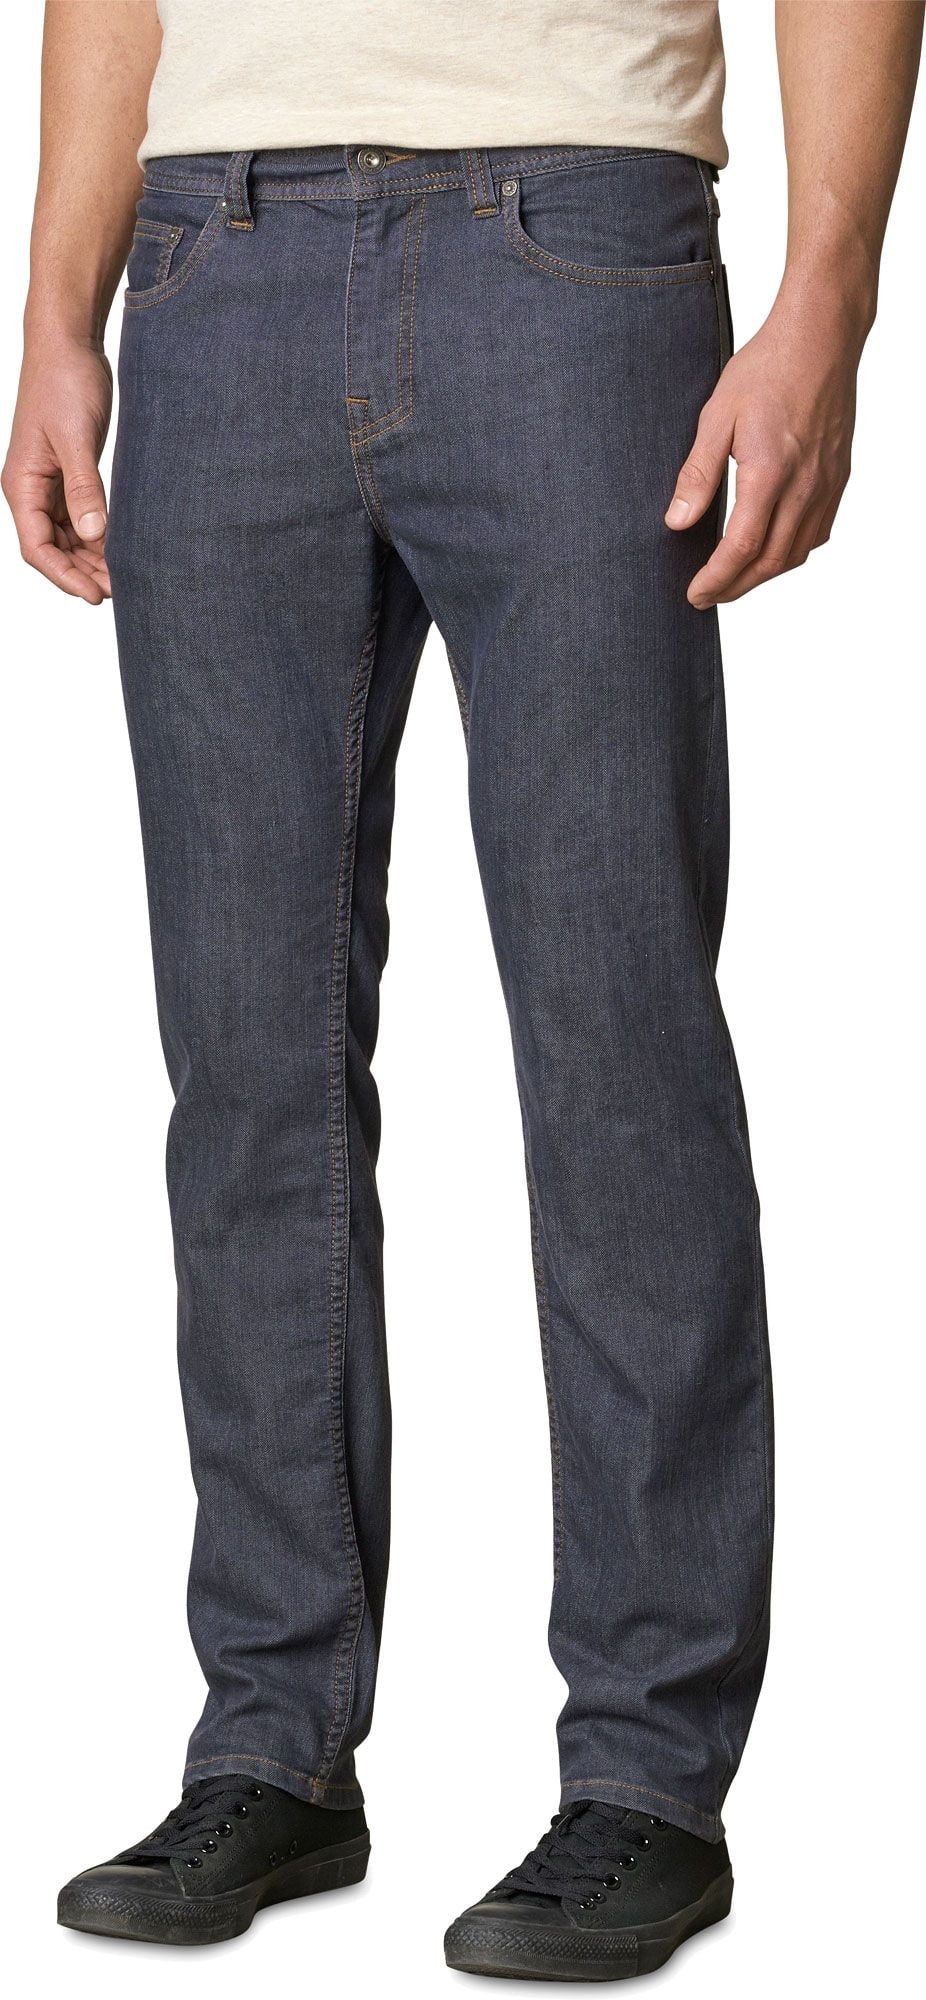 prAna - prana men's bridger jeans - Walmart.com - Walmart.com